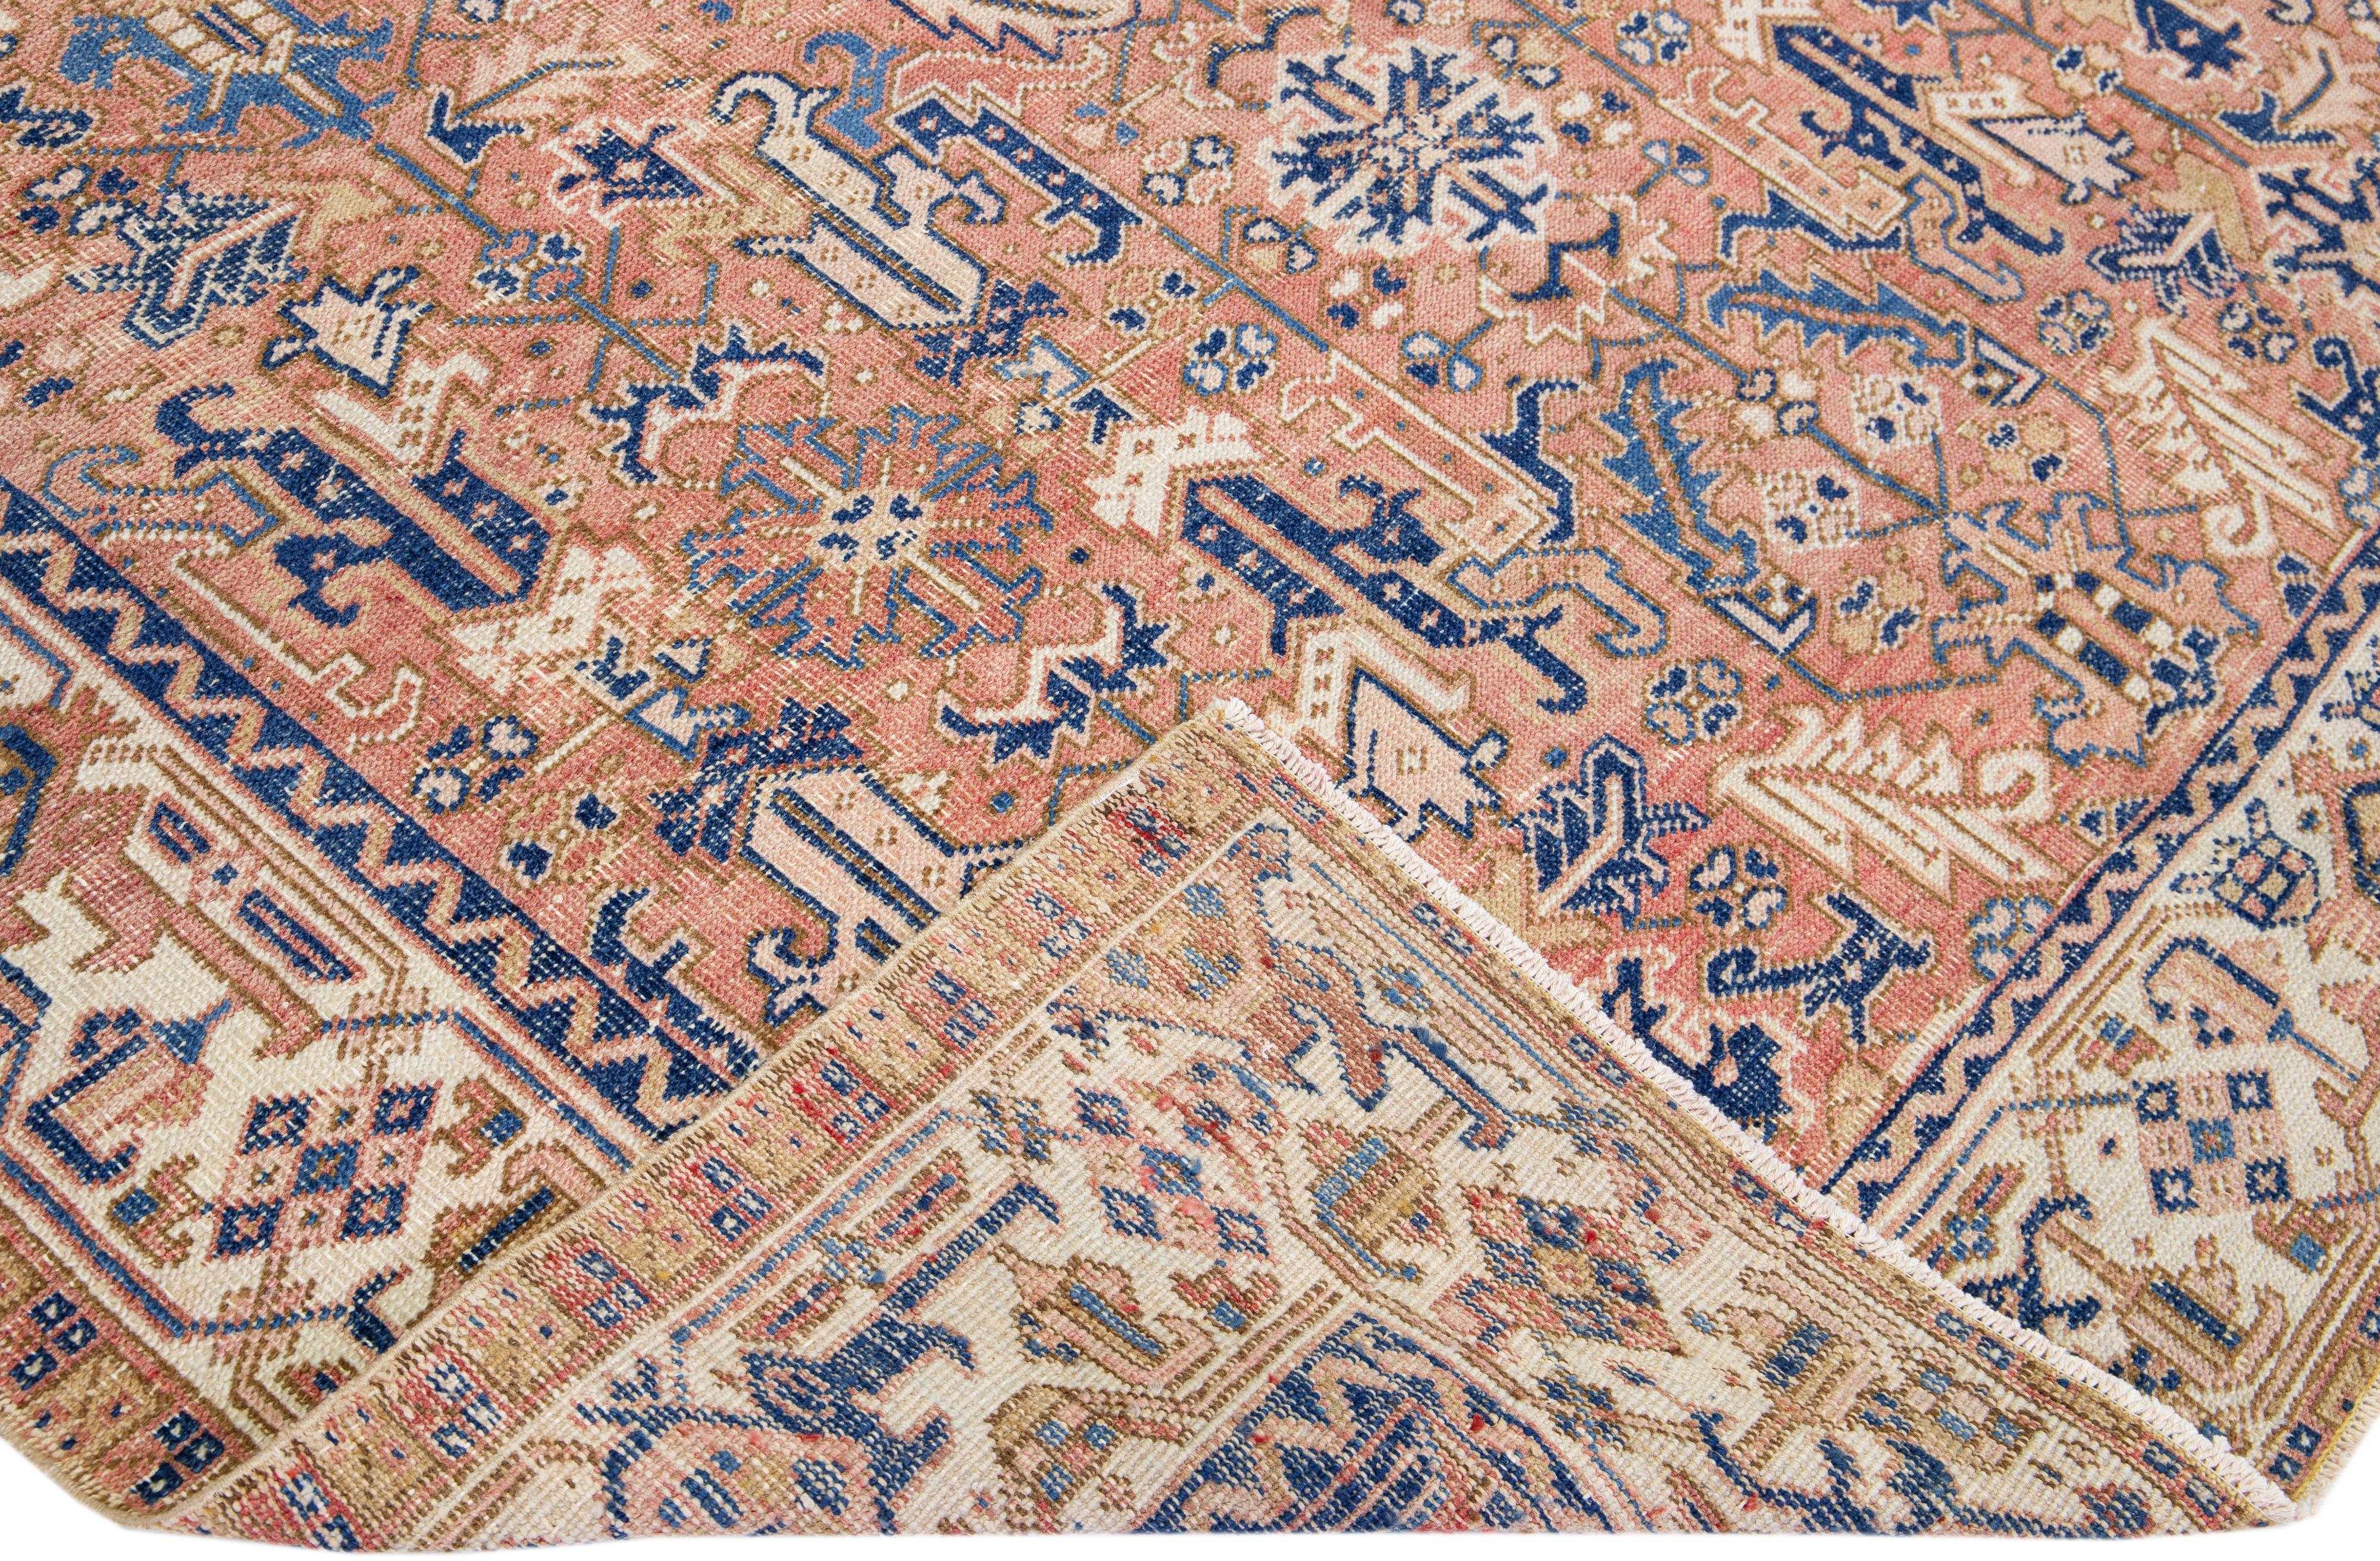 Schöne antike Heriz handgeknüpfte Wolle Teppich mit einem Pfirsich Farbfeld. Dieser Perserteppich hat einen beigen Rahmen mit blauen Akzenten in einem herrlichen geometrischen Blumenmuster.

Dieser Teppich misst: 7'8